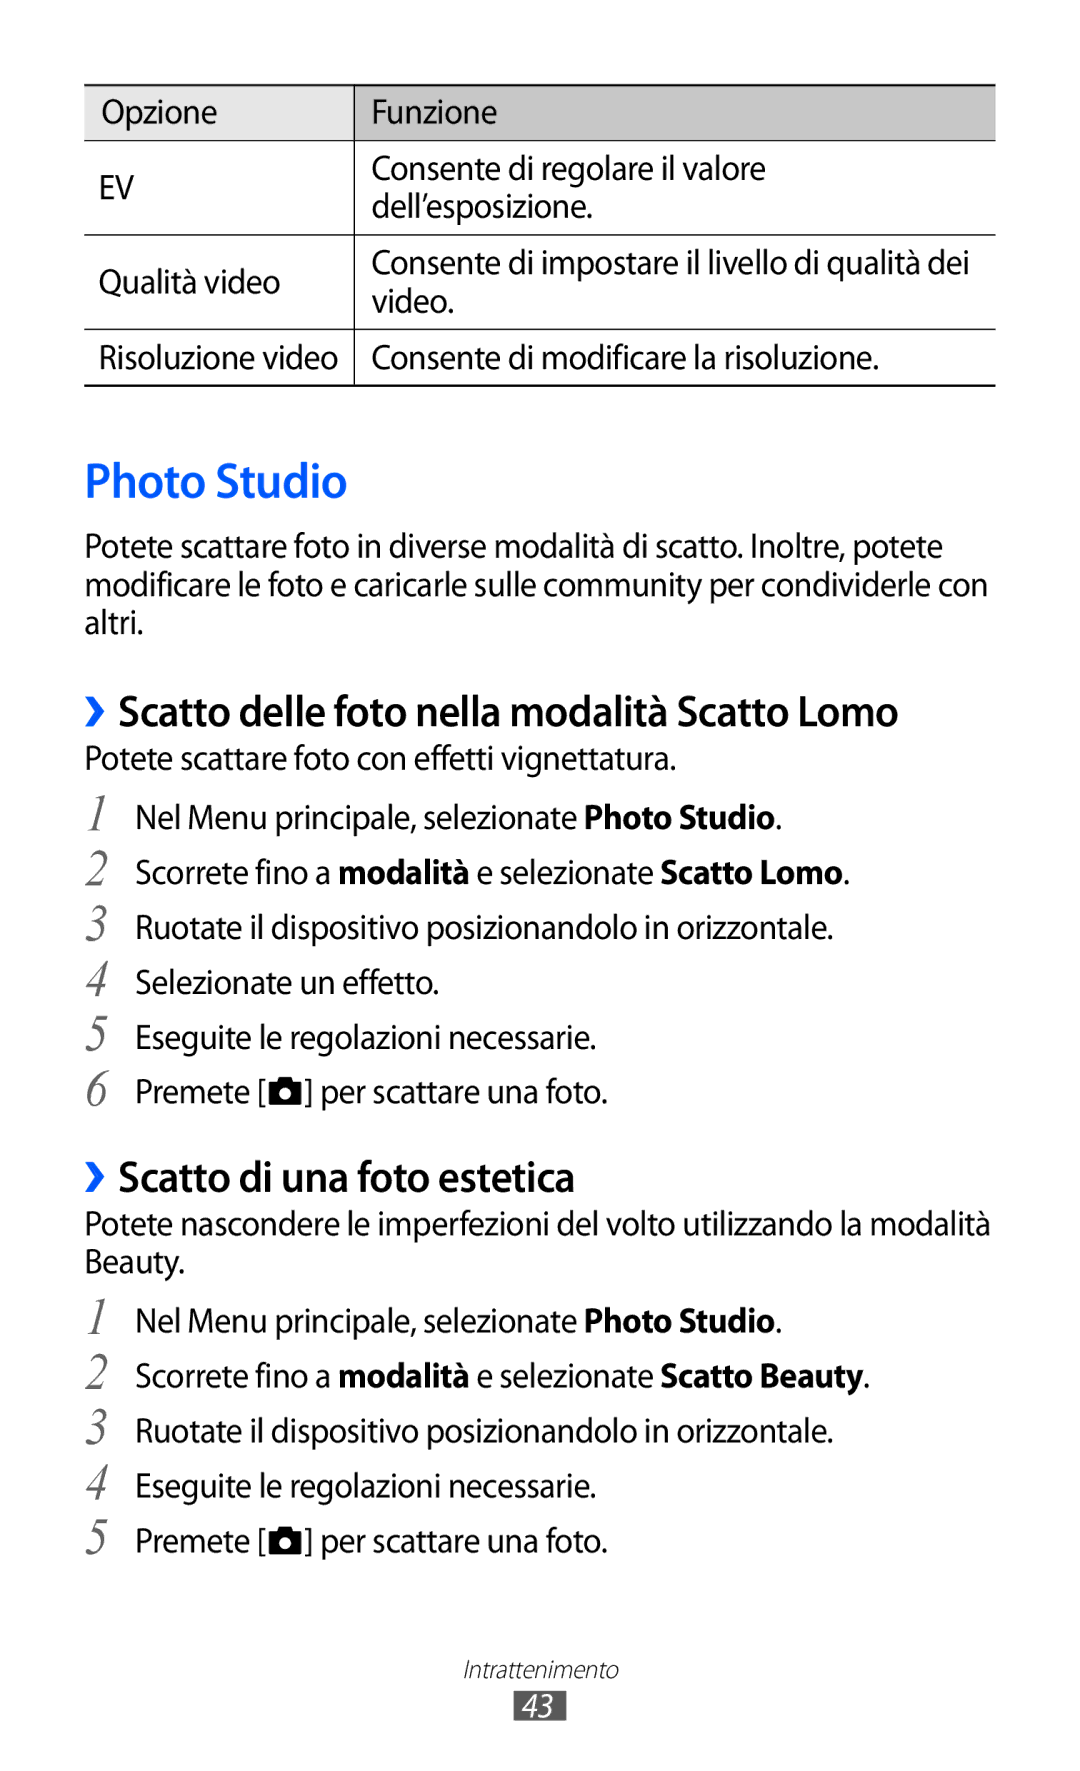 Samsung GT-I8350DAAHUI manual Photo Studio, ››Scatto delle foto nella modalità Scatto Lomo, ››Scatto di una foto estetica 